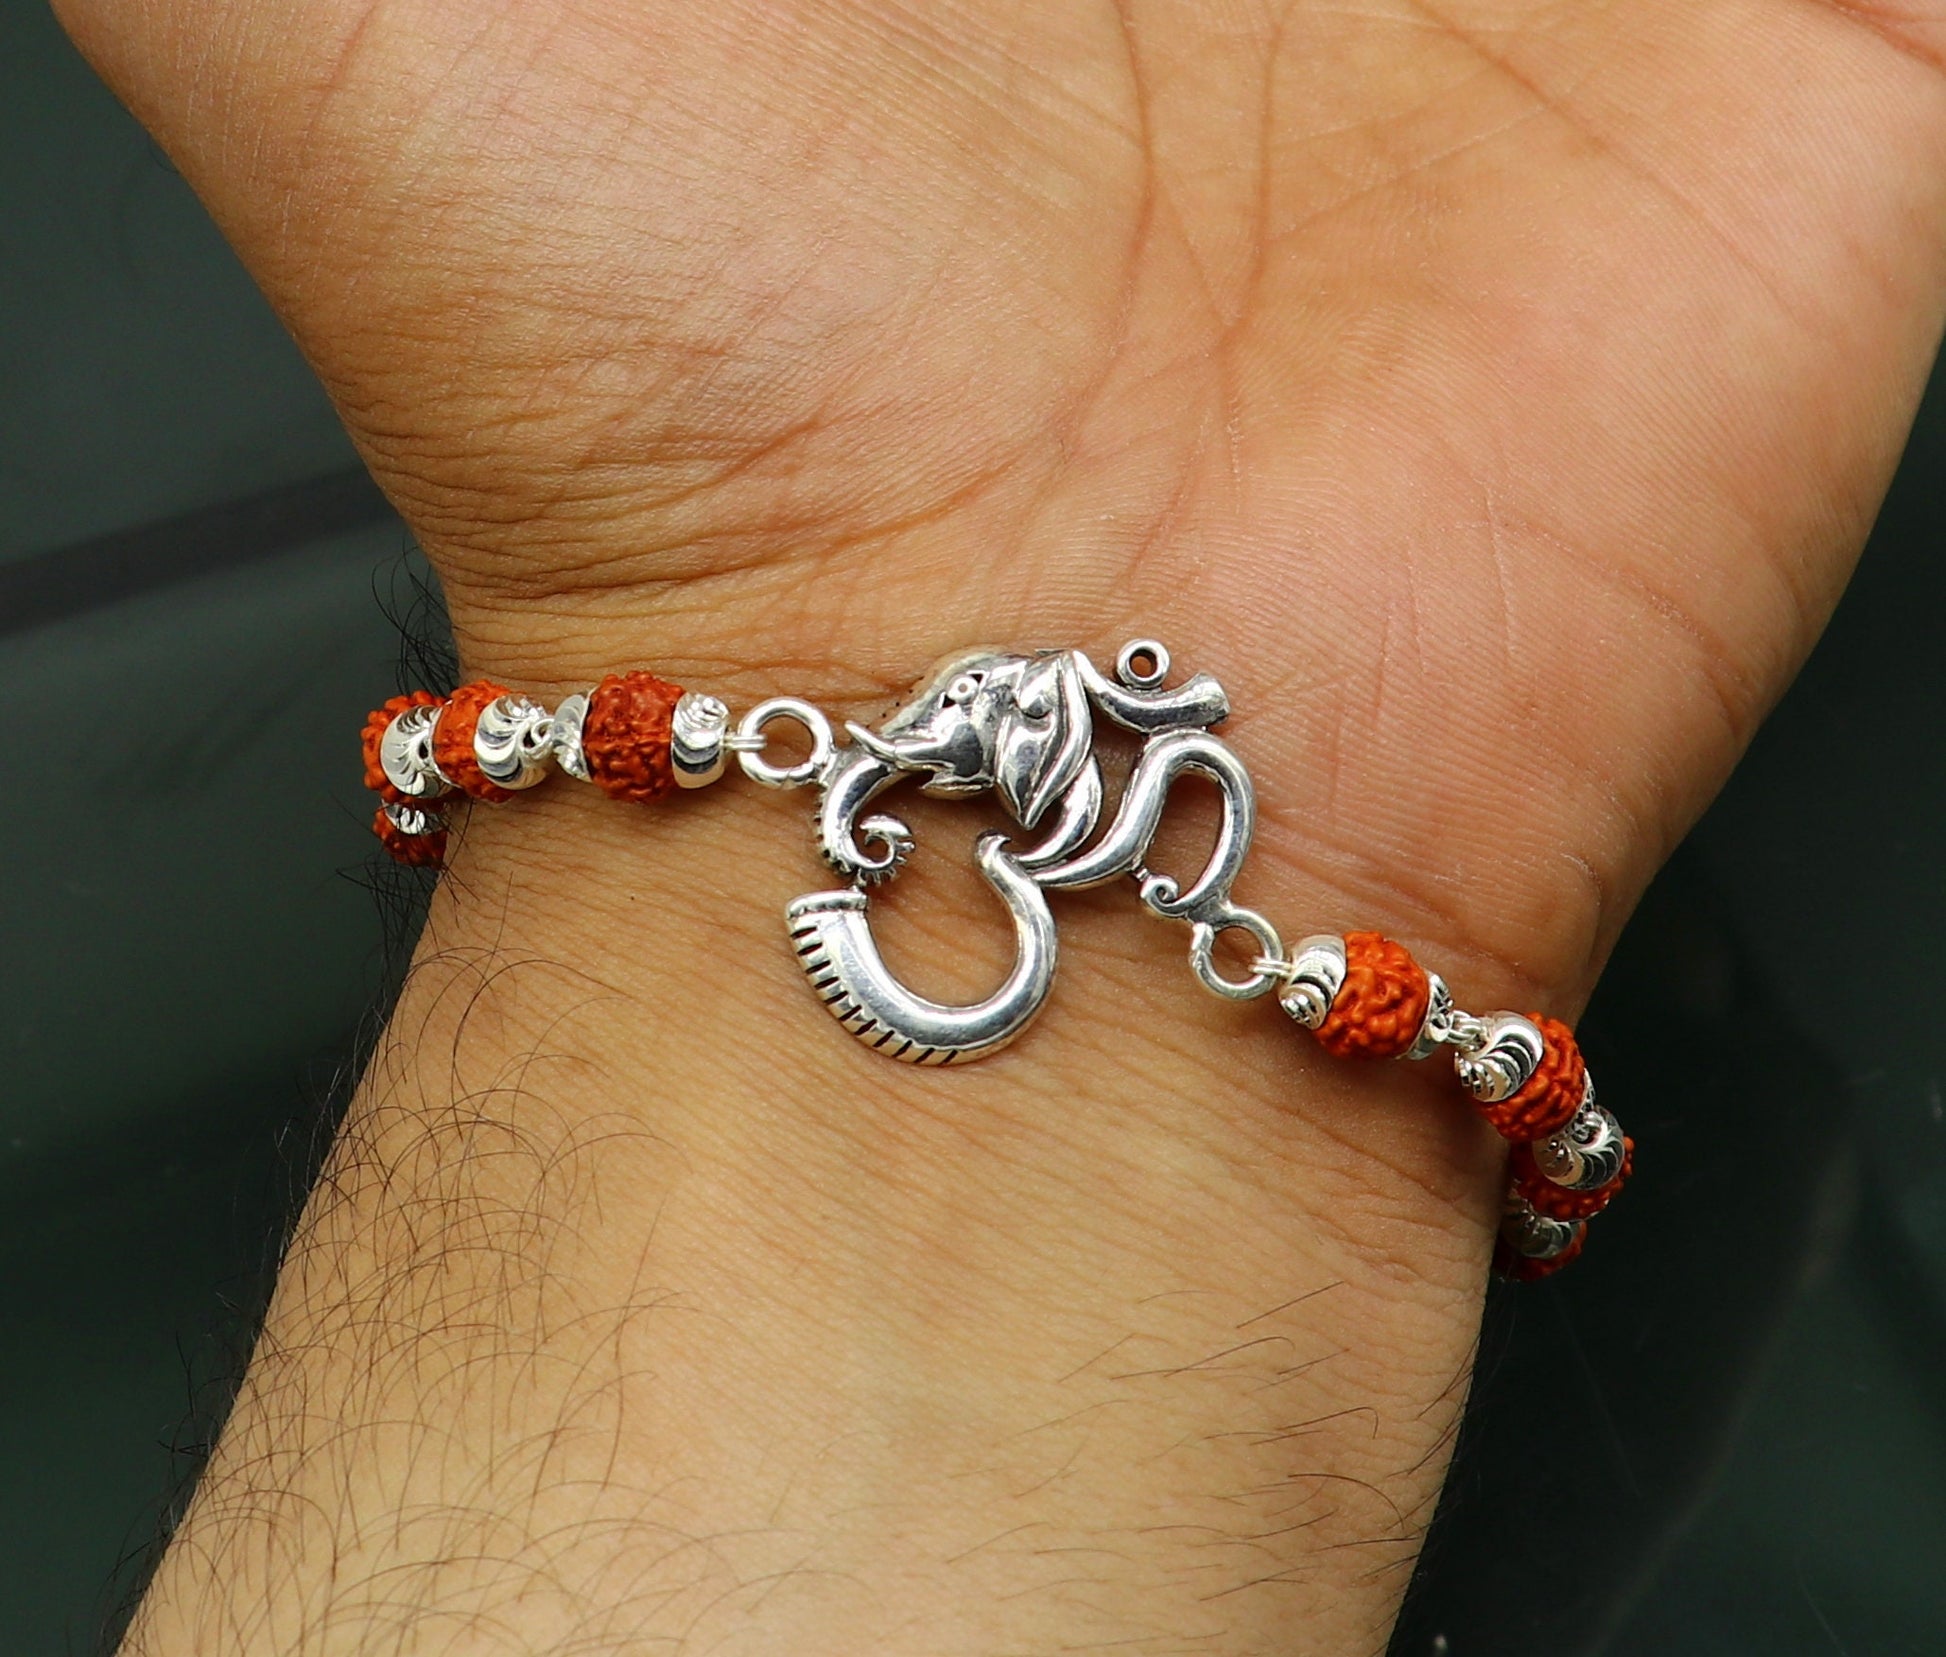 All sizes 925 Sterling silver customized rudraksha beaded 'AUM' Rakhi bracelet best gift for your brother's  for special Rakshabandhan rk004 - TRIBAL ORNAMENTS